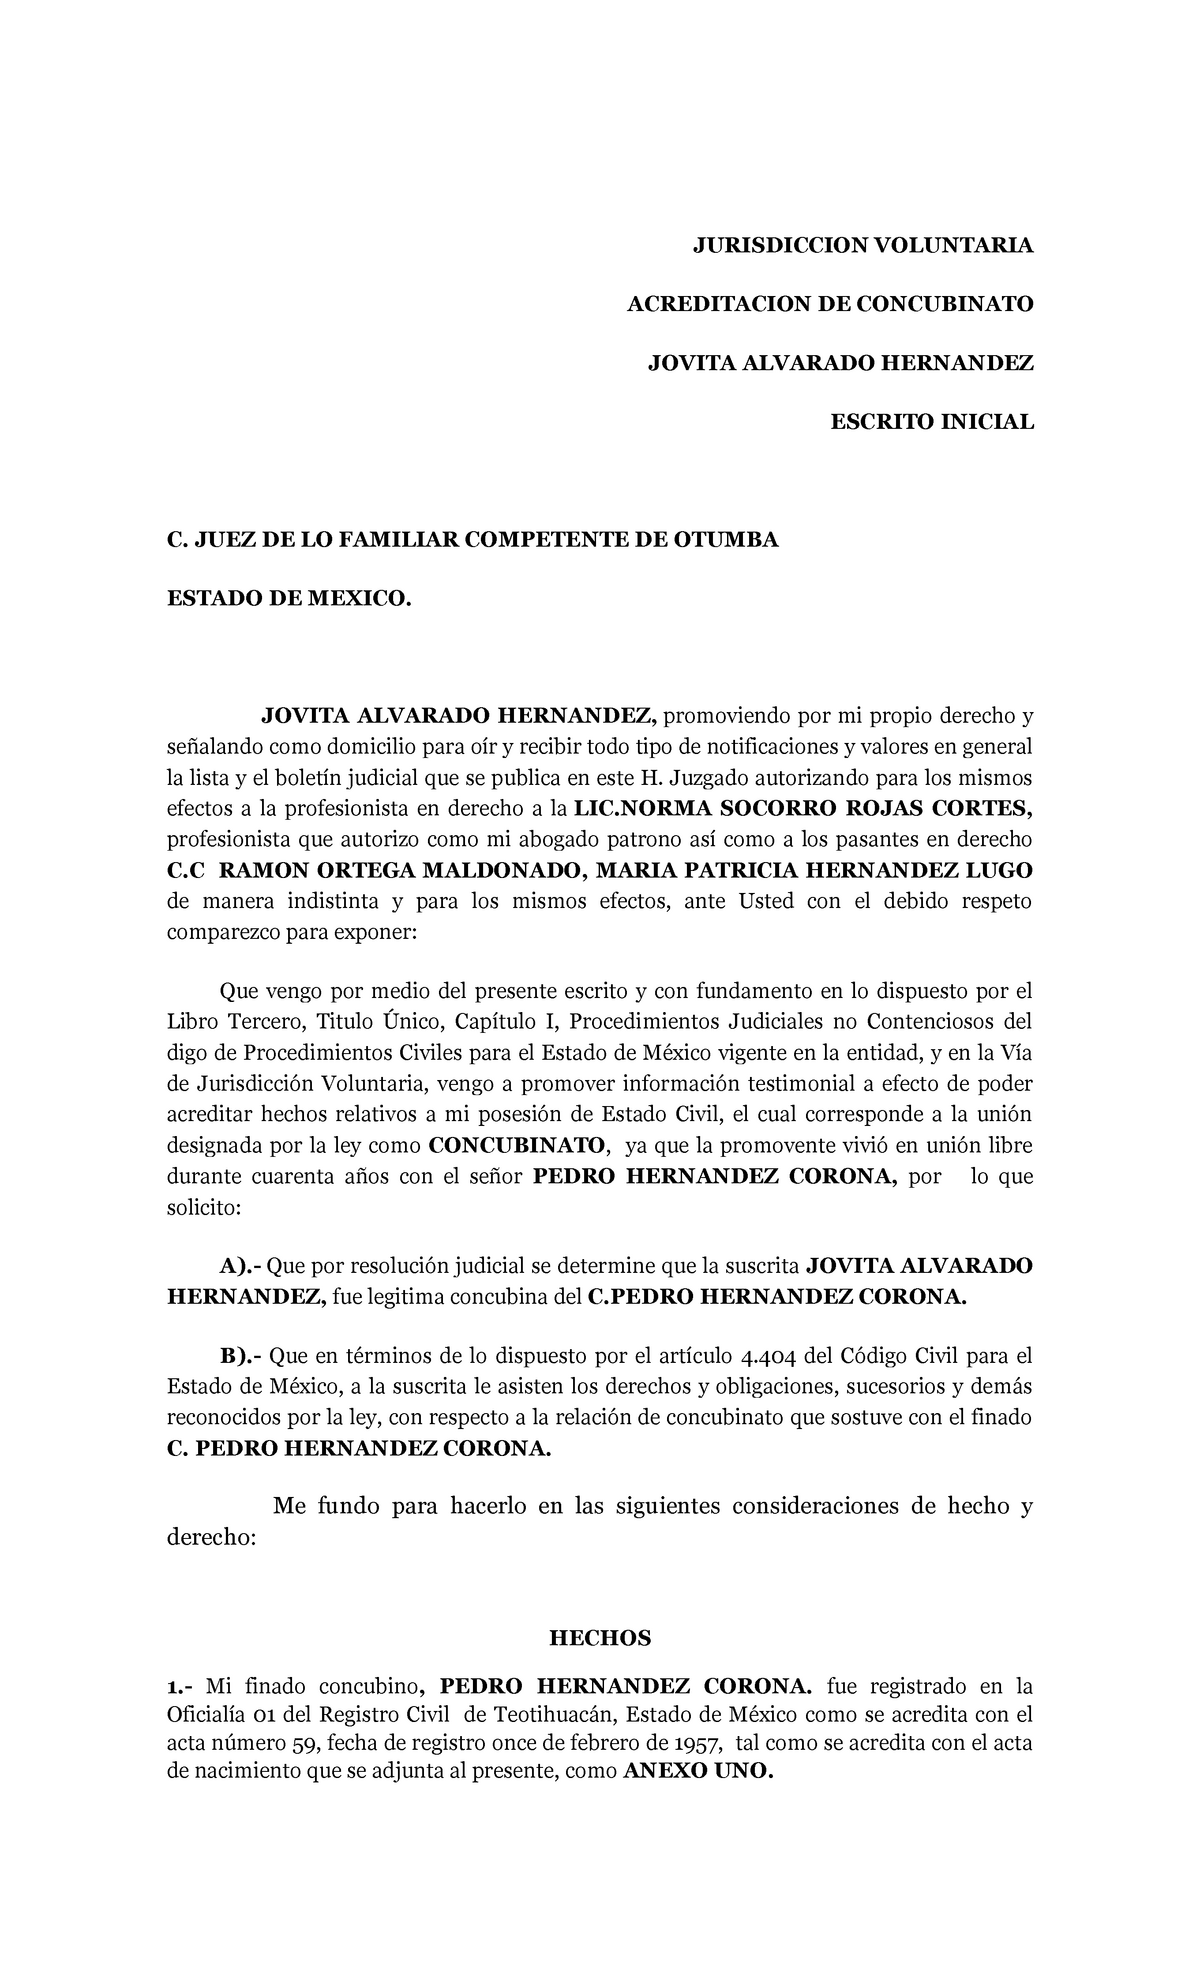 Jurisdiccion Voluntaria Acreditar Concubinato Docx Document - www.vrogue.co